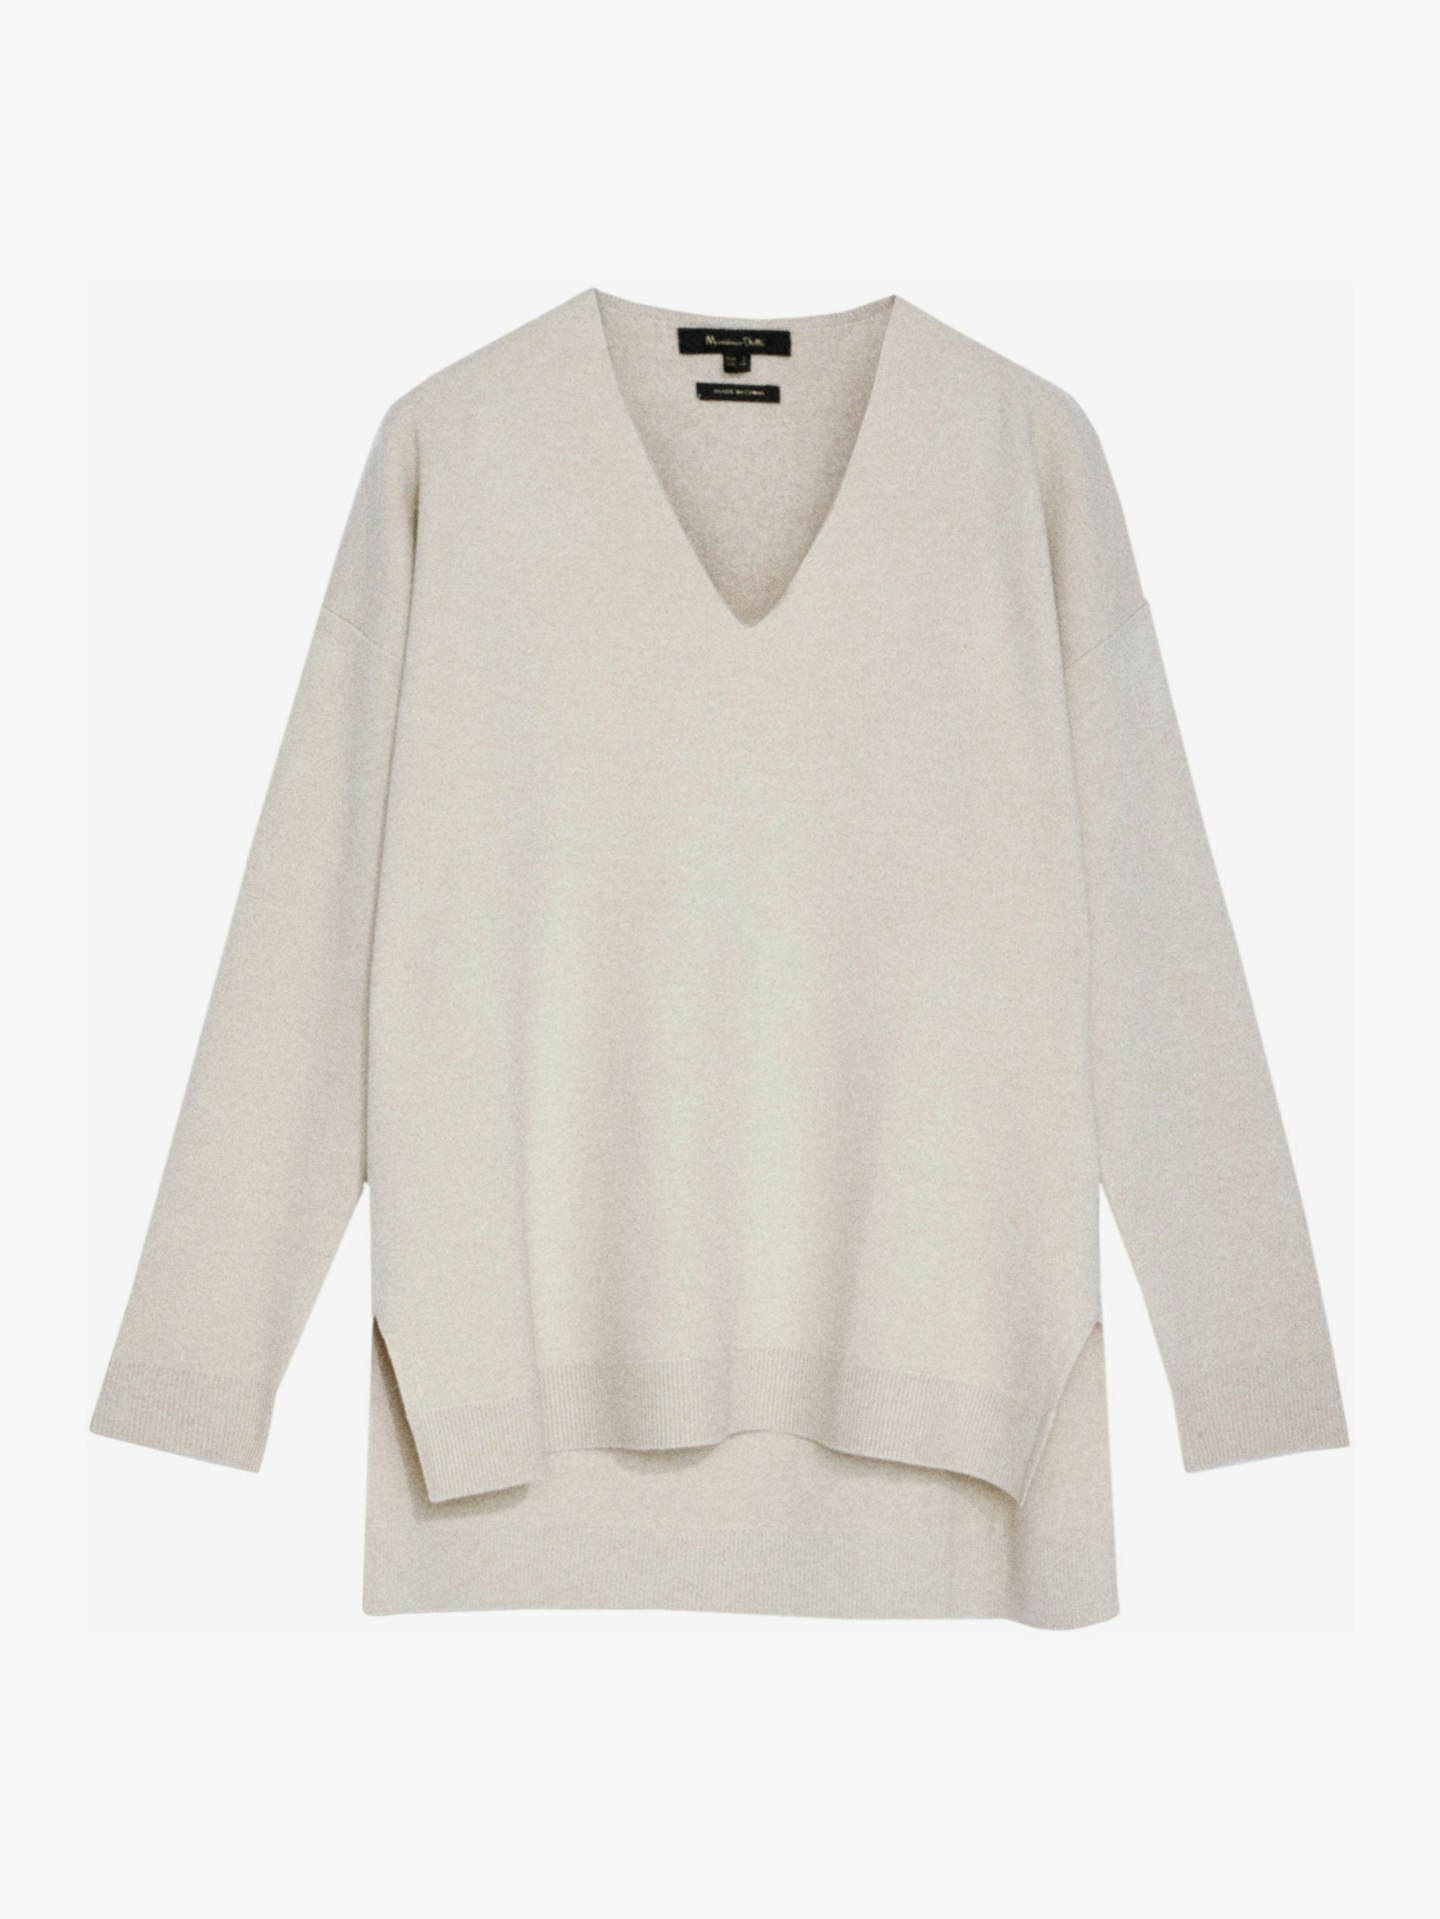 Massimo Dutti, V-Neck Cape Sweater, £69.95